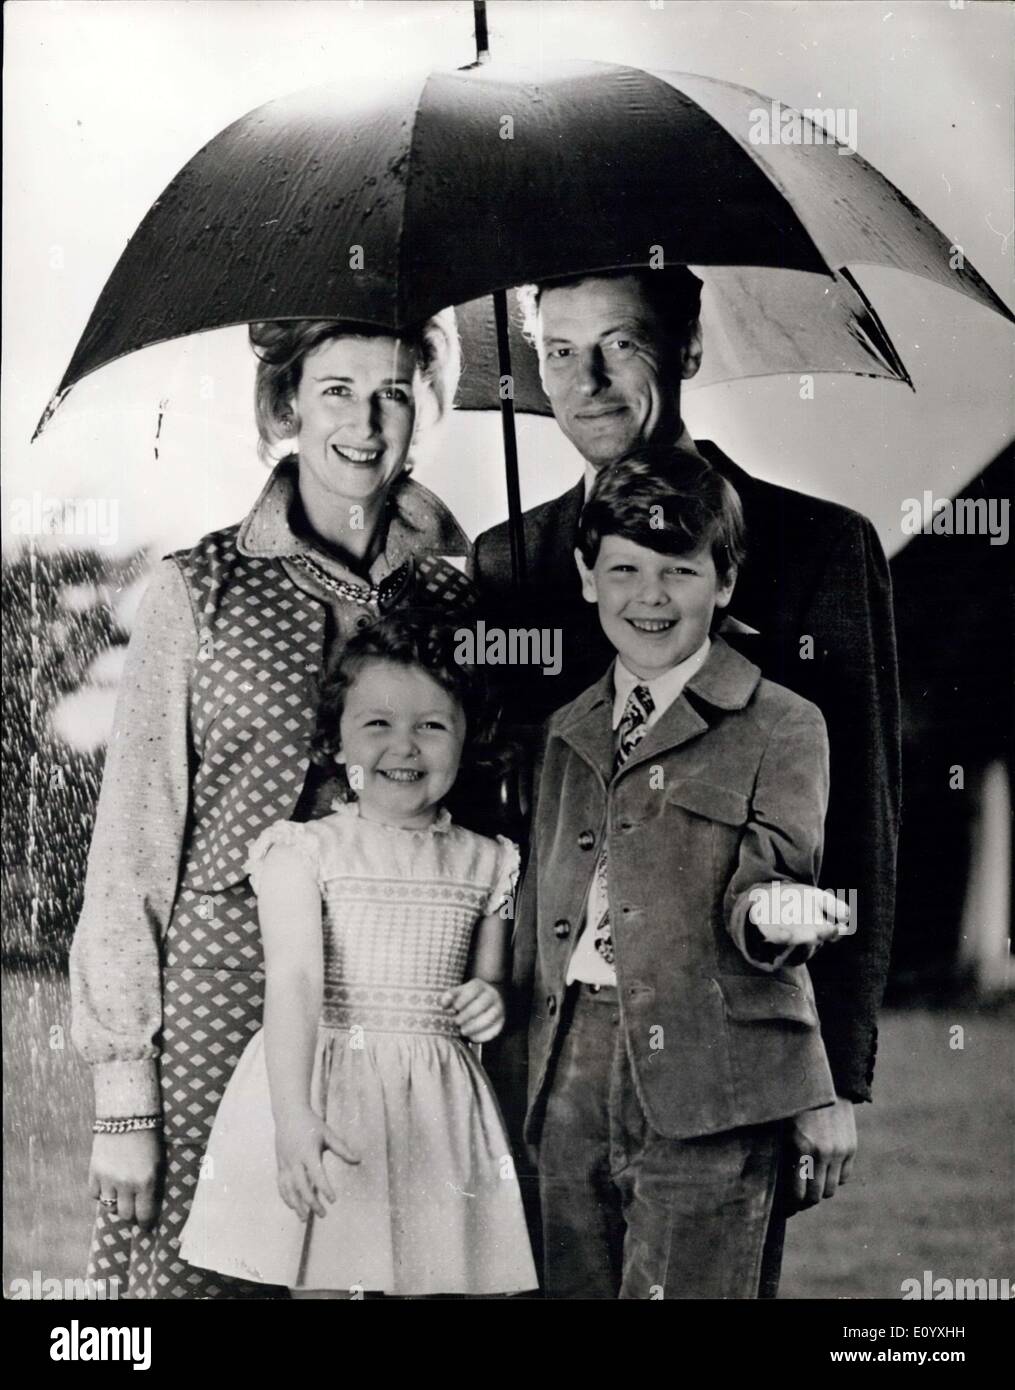 Sett. 29, 1971 - Sua Altezza Reale la Principessa Alexandra e la sua famiglia.: La Sua Altezza Reale la Principessa Alexandra e l'on. Angus Foto Stock